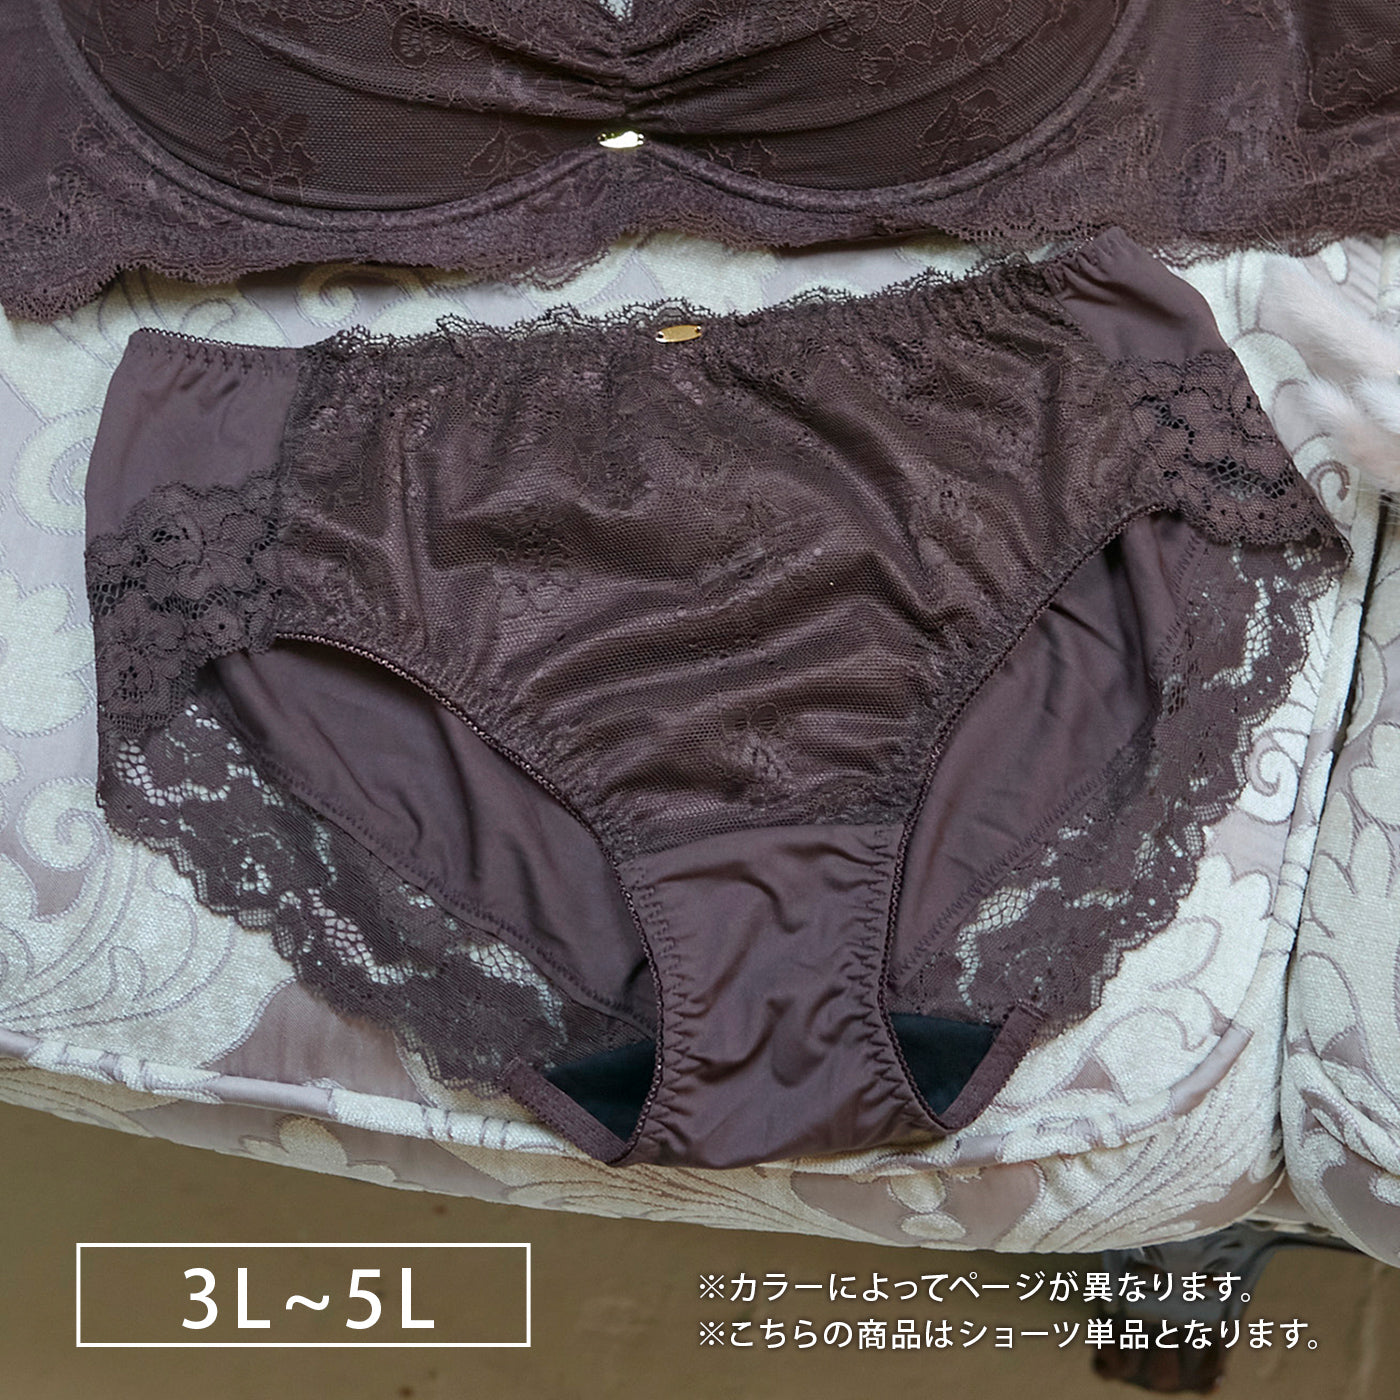 【3L〜5L】デコルリッチブラペアショーツ（ブラウン）_90524-57